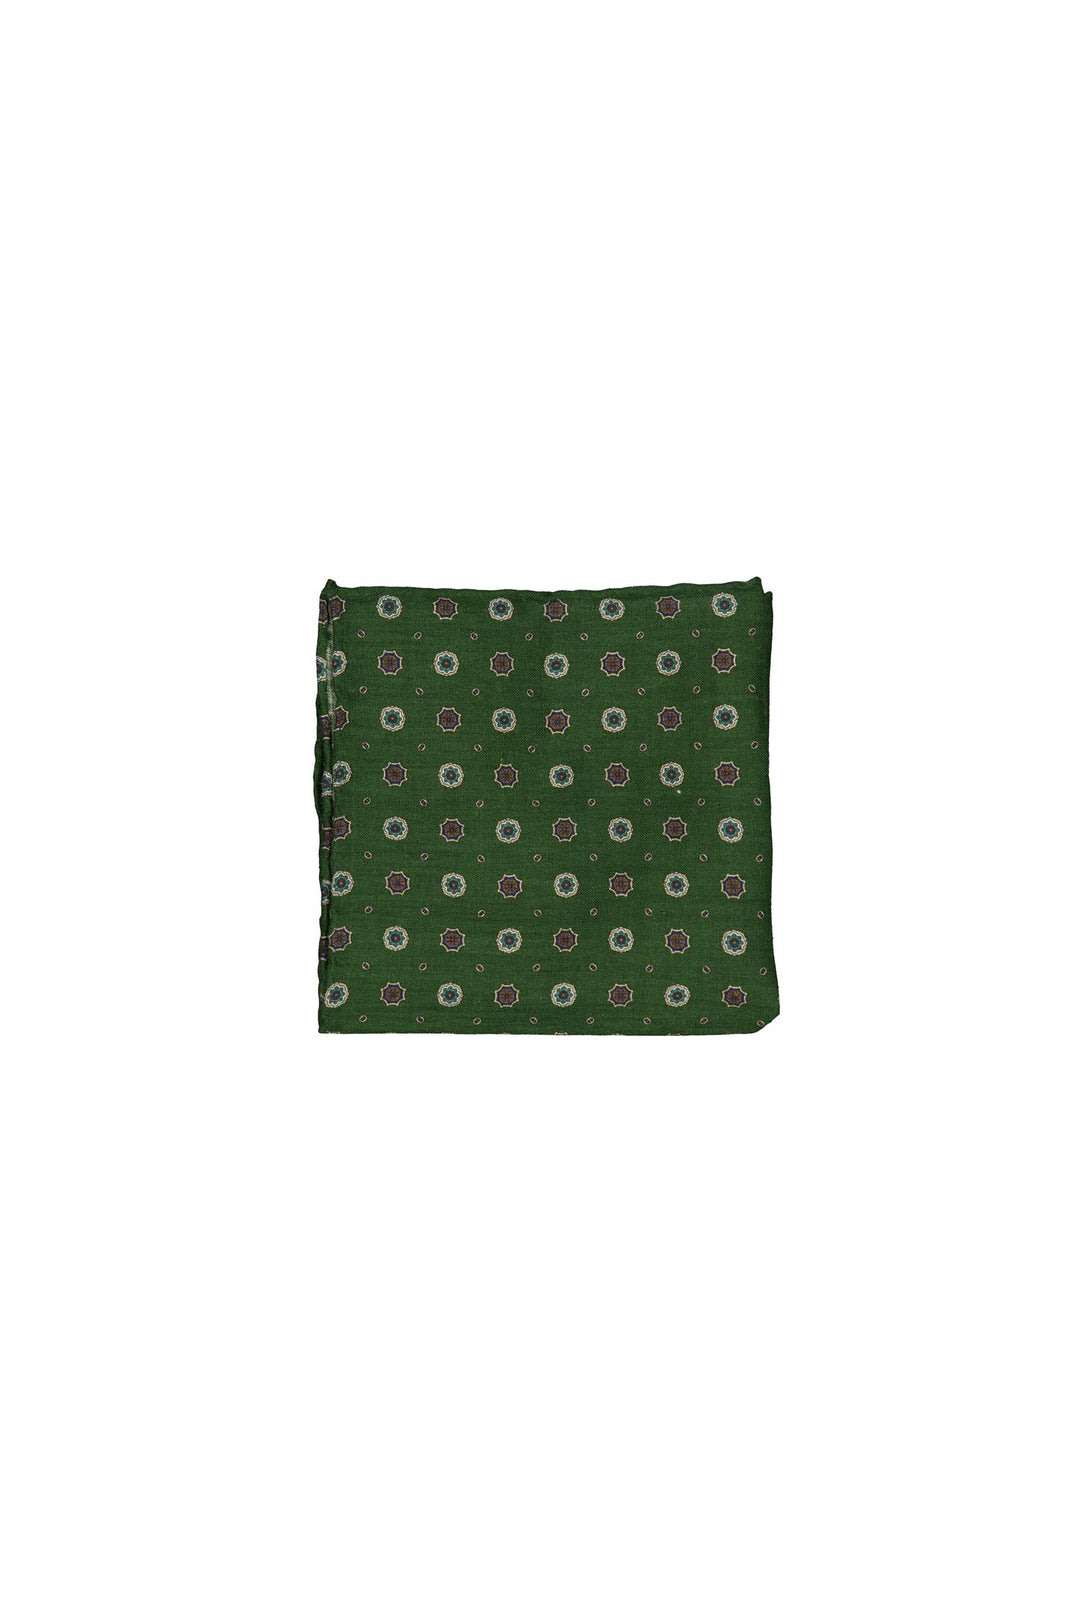 Wool Printed Hanky Green Pattern-Tørkle-Bogartstore